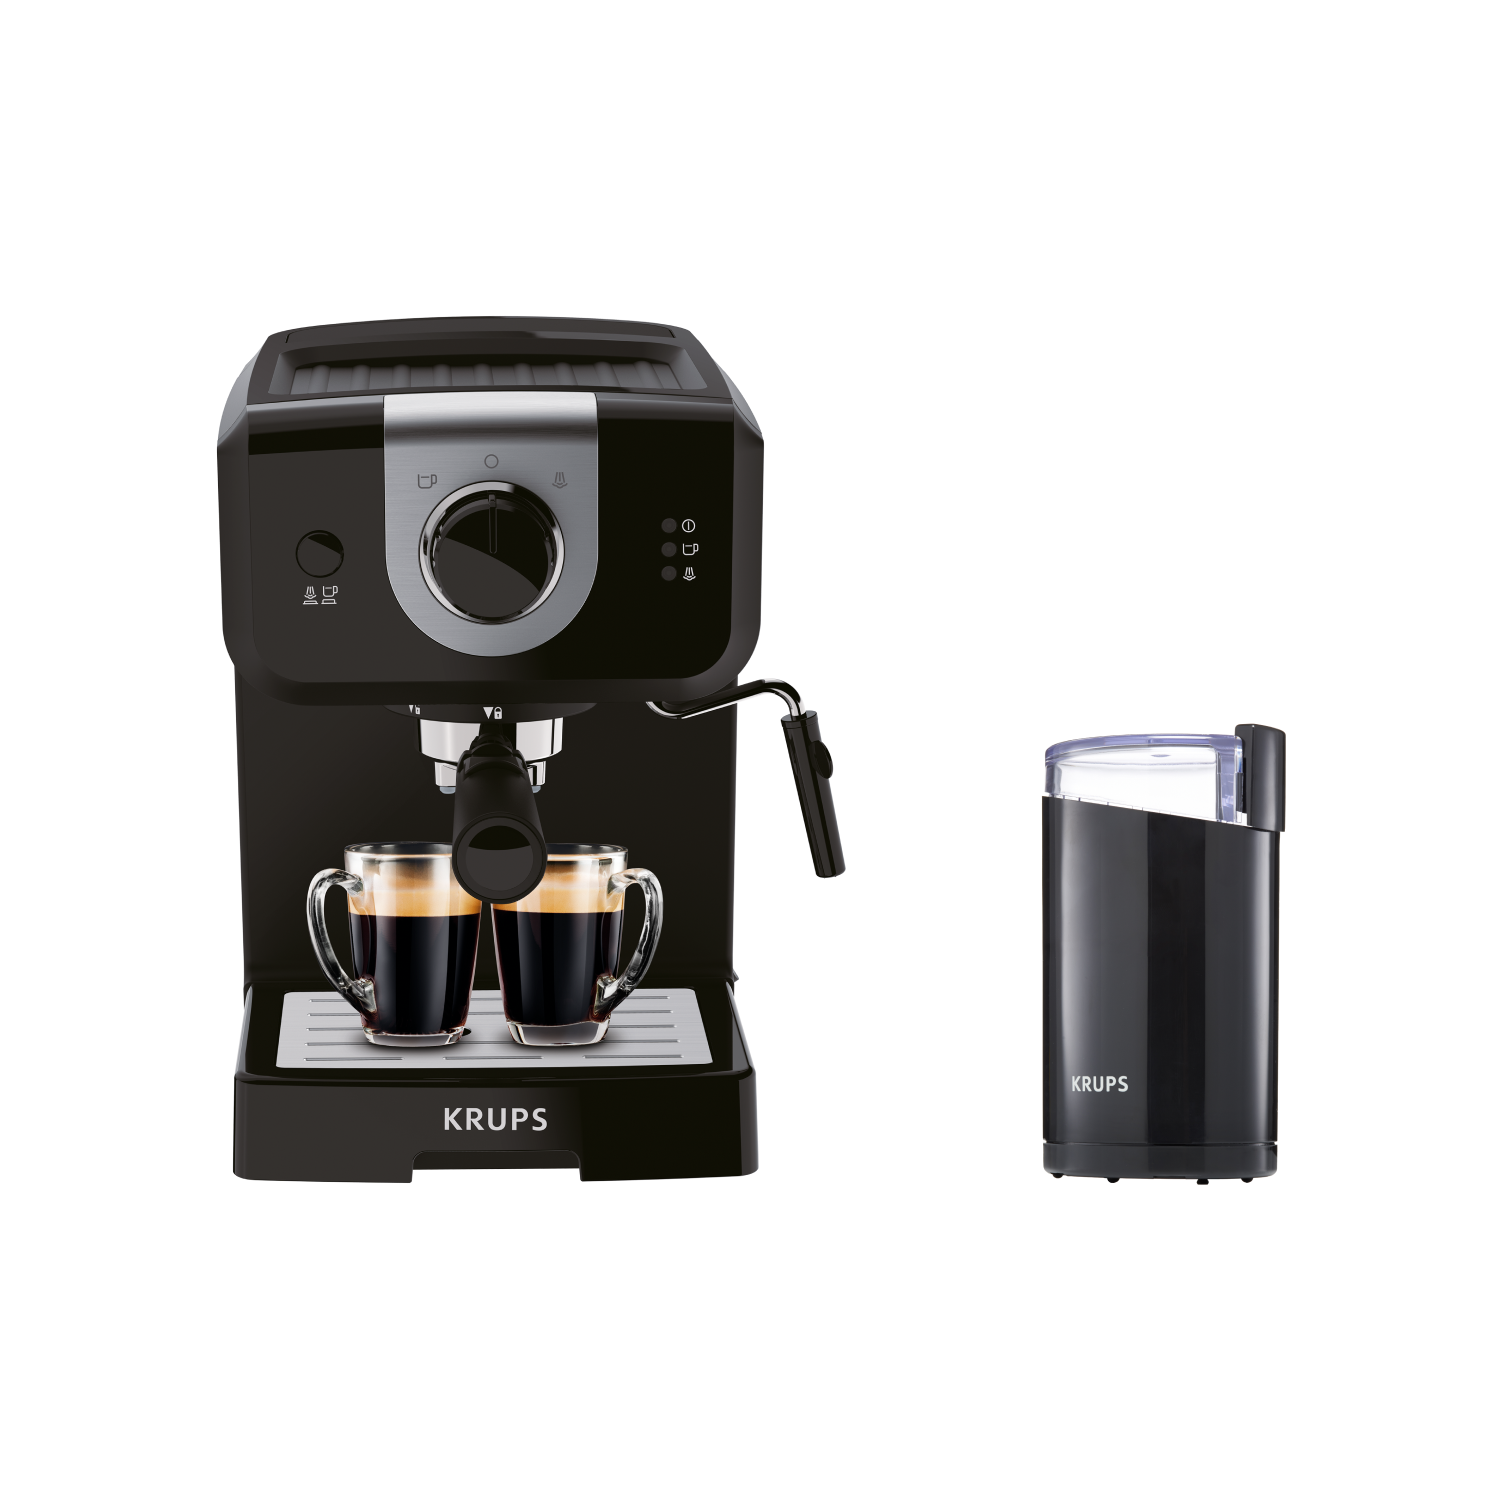 Рожковая кофеварка Opio XP320830 с кофемолкой Krups Fast Touch F2034232 рожковая кофеварка zigmund